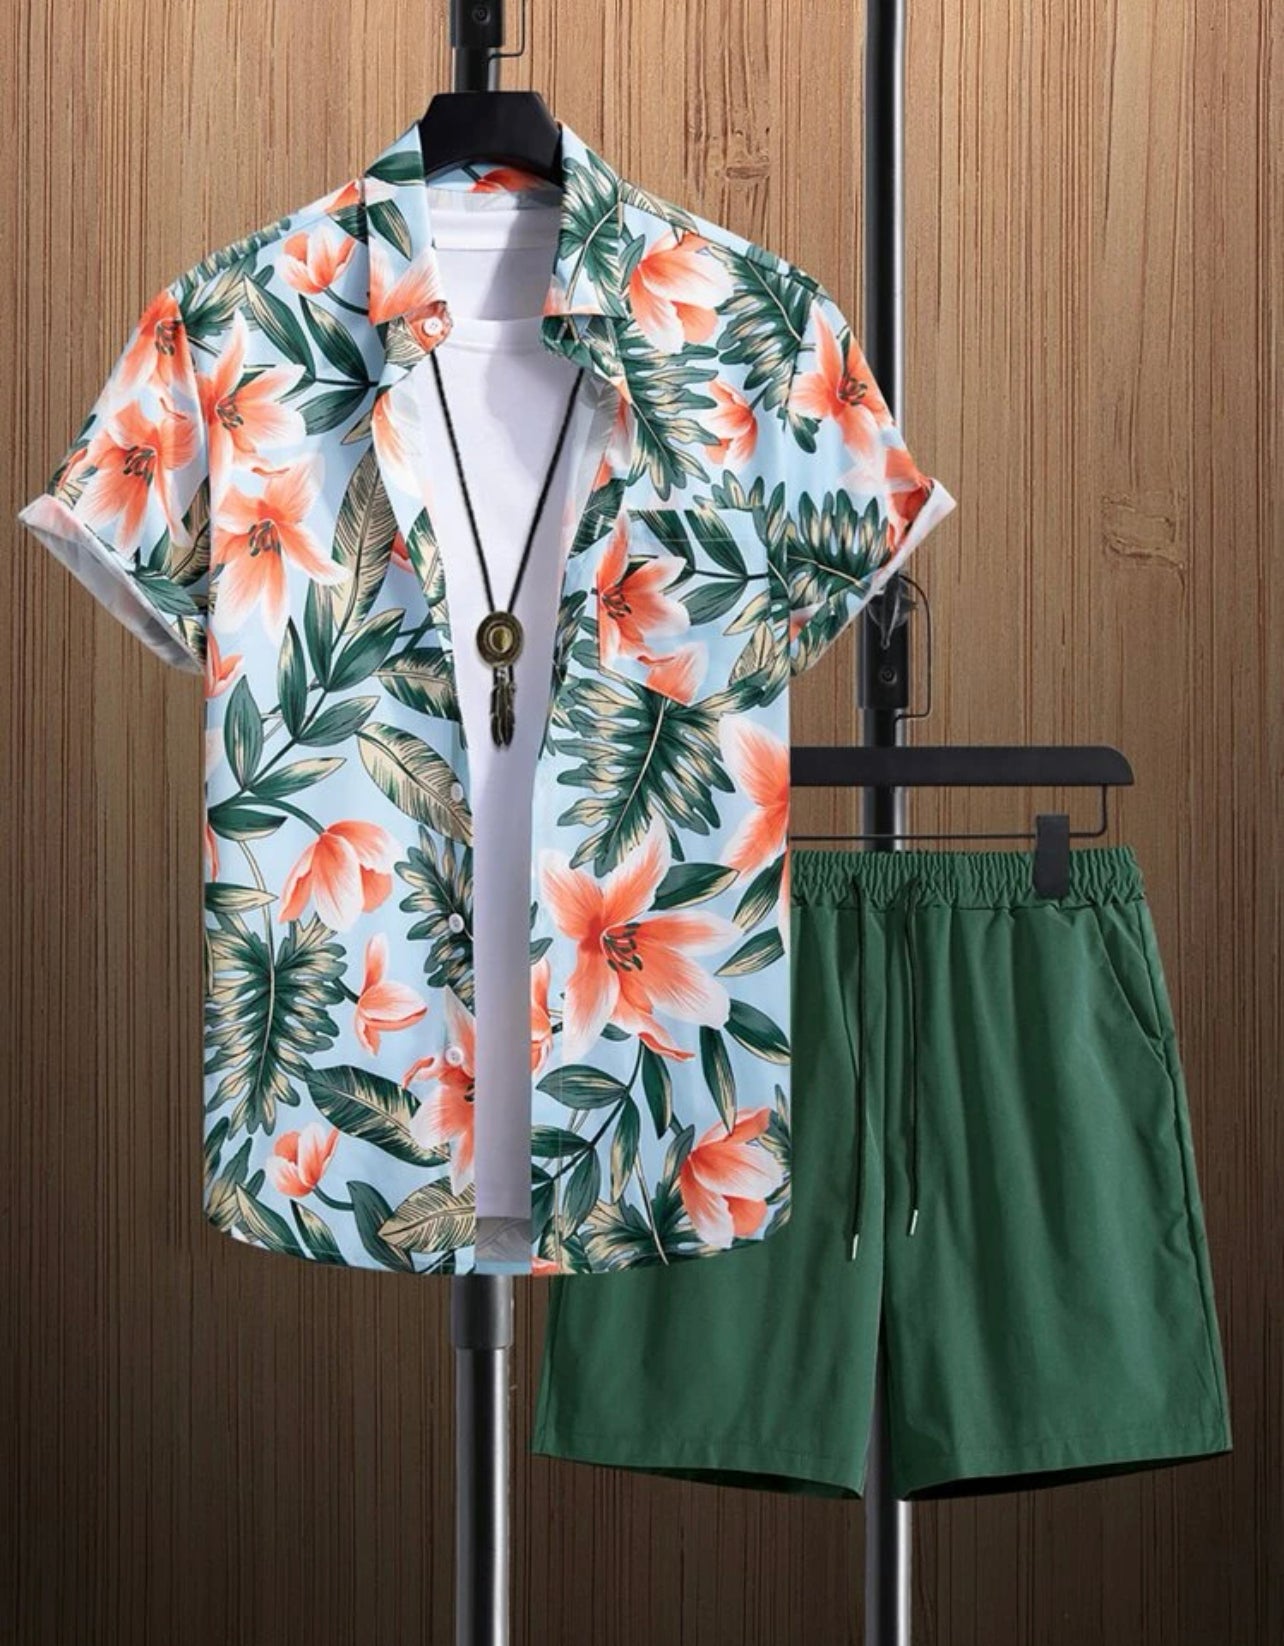 Herrenbekleidung: Hemd mit tropischem Print und Shorts mit Kordelzug